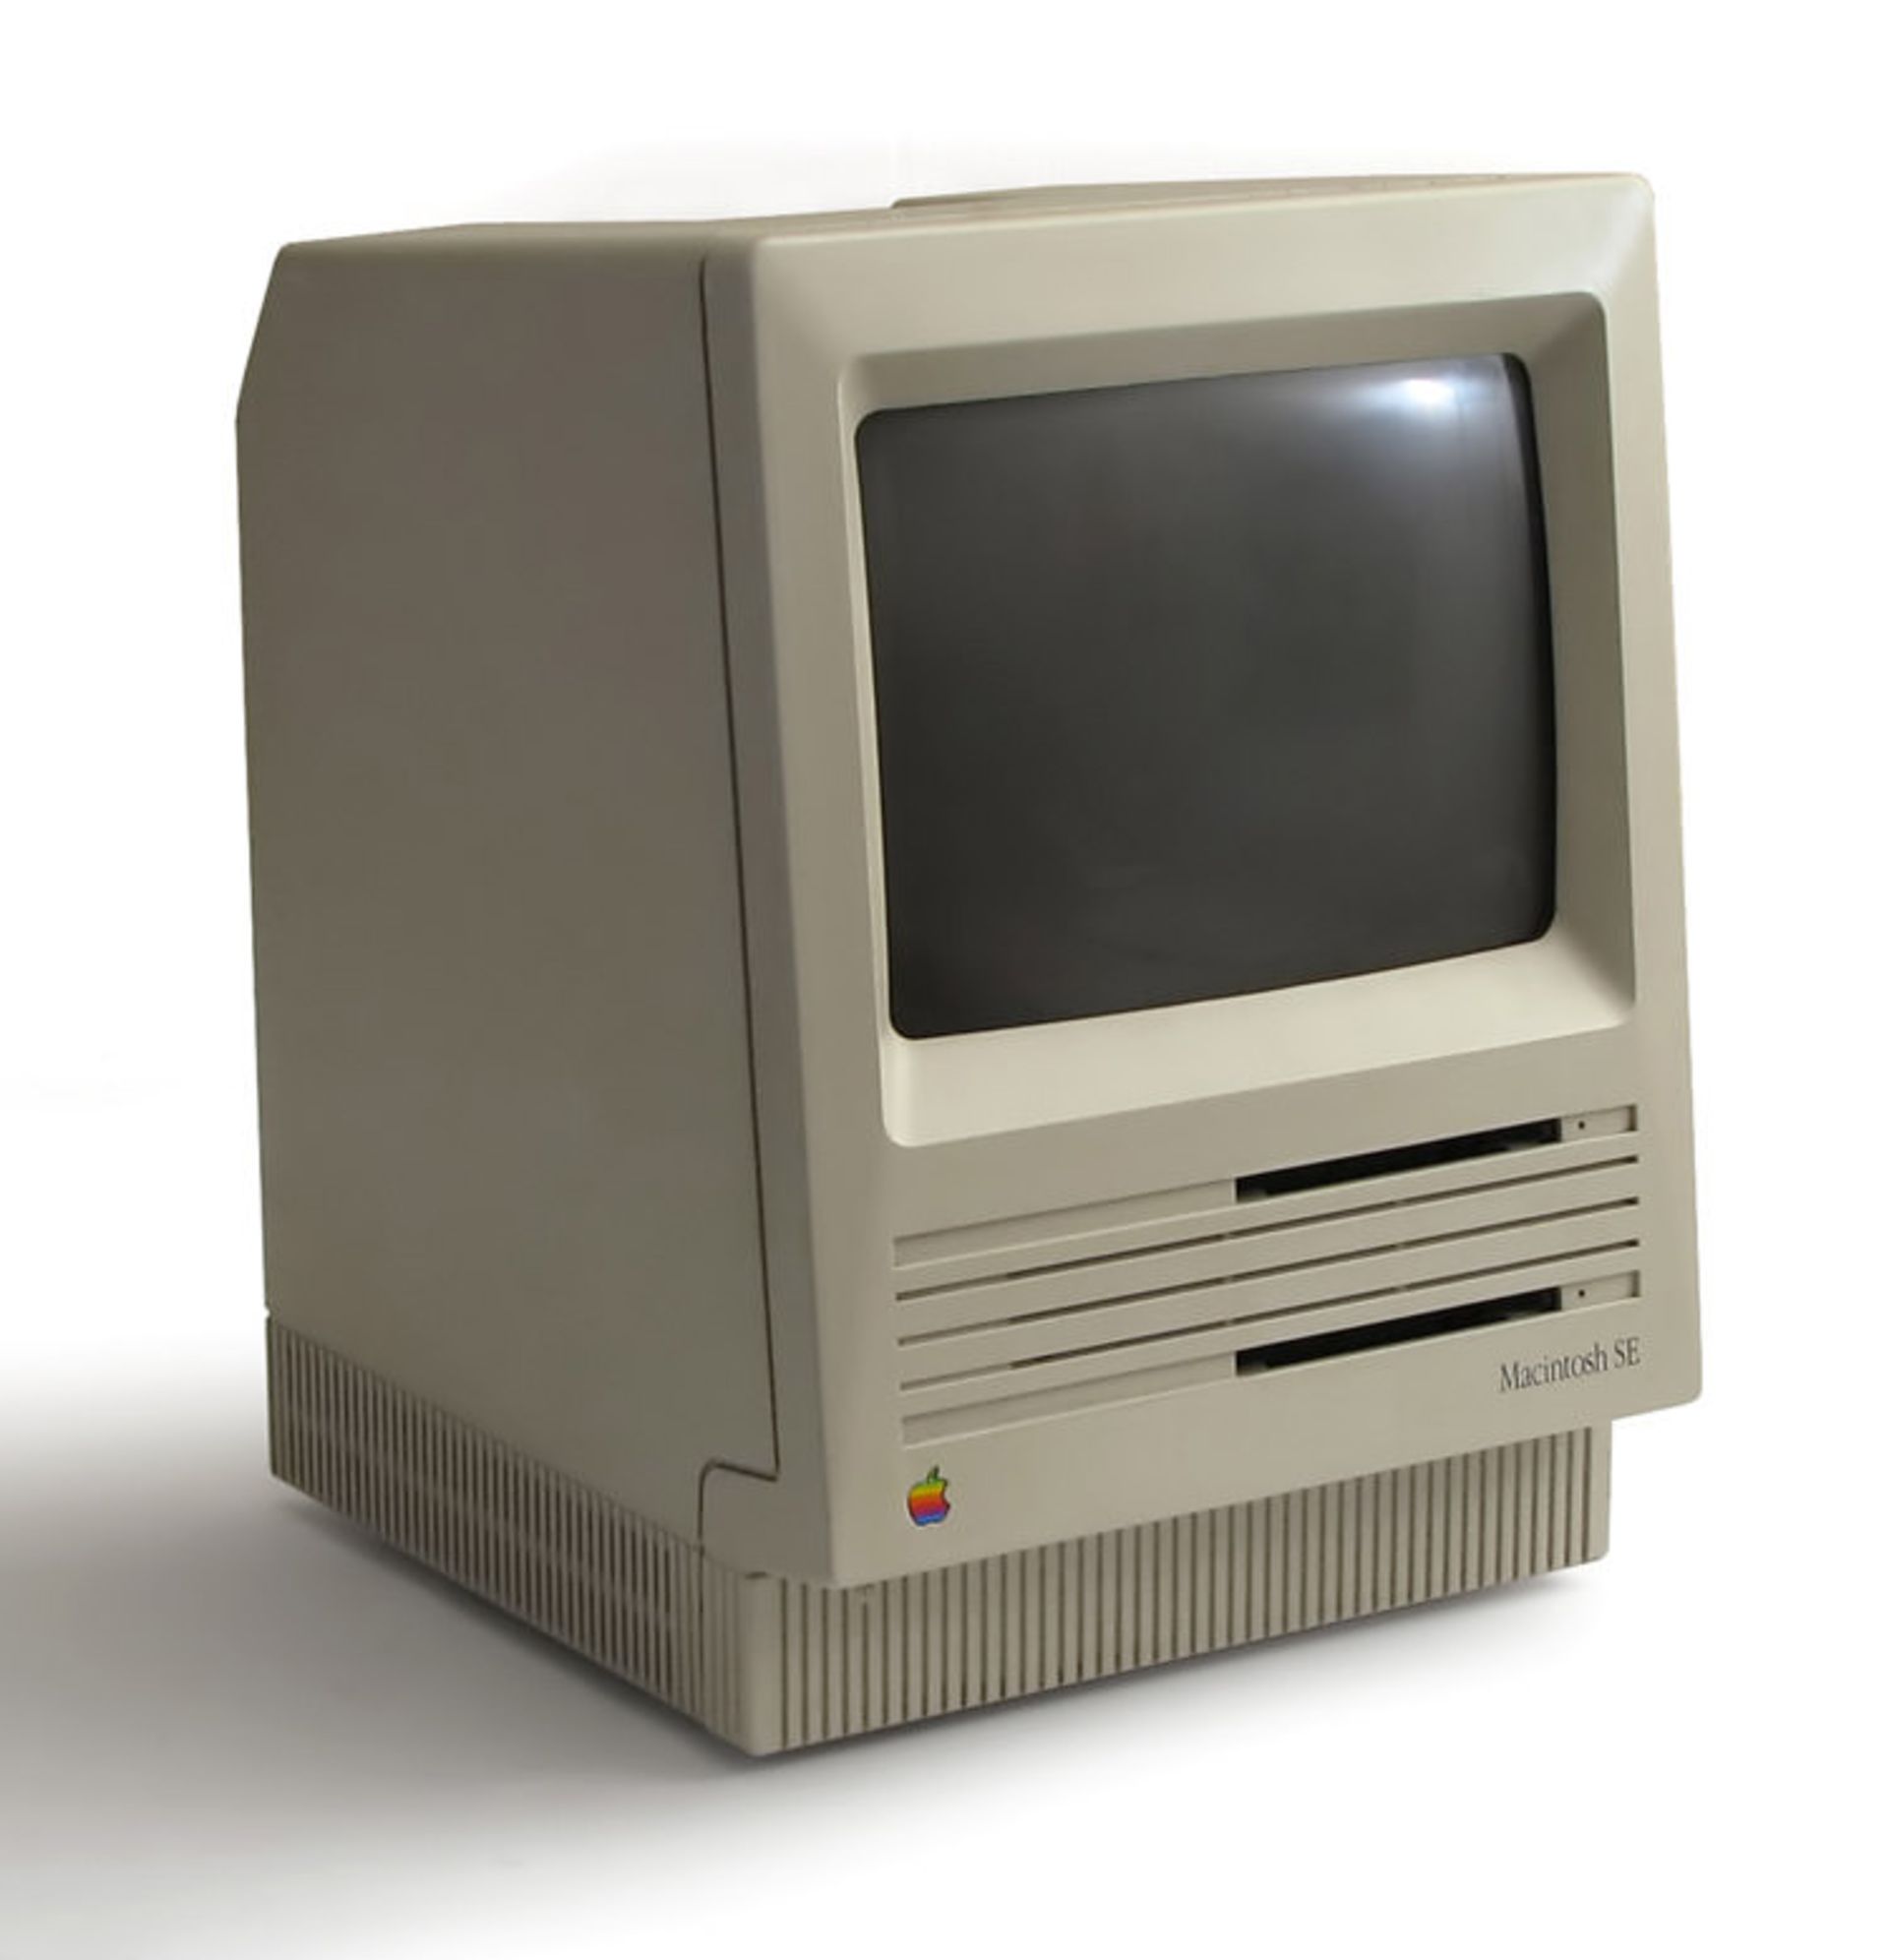 مرجع متخصصين ايران Macintosh SE مكينتاش